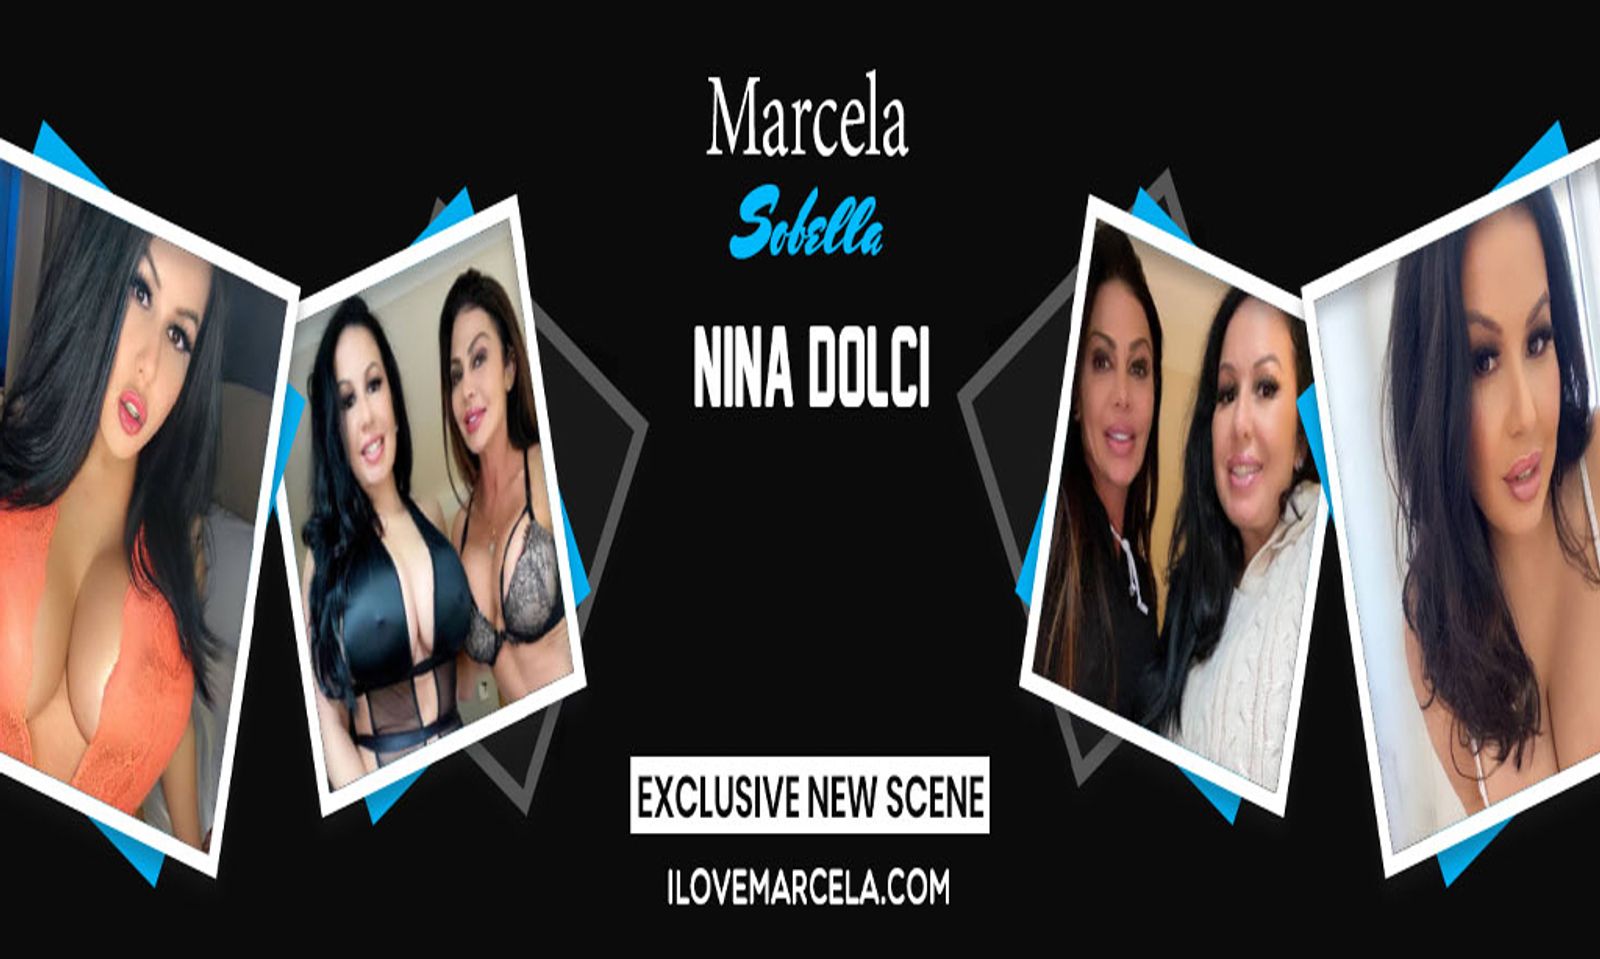 Nina Dolci and Marcela Sobella Star in Hot New MILF Scene